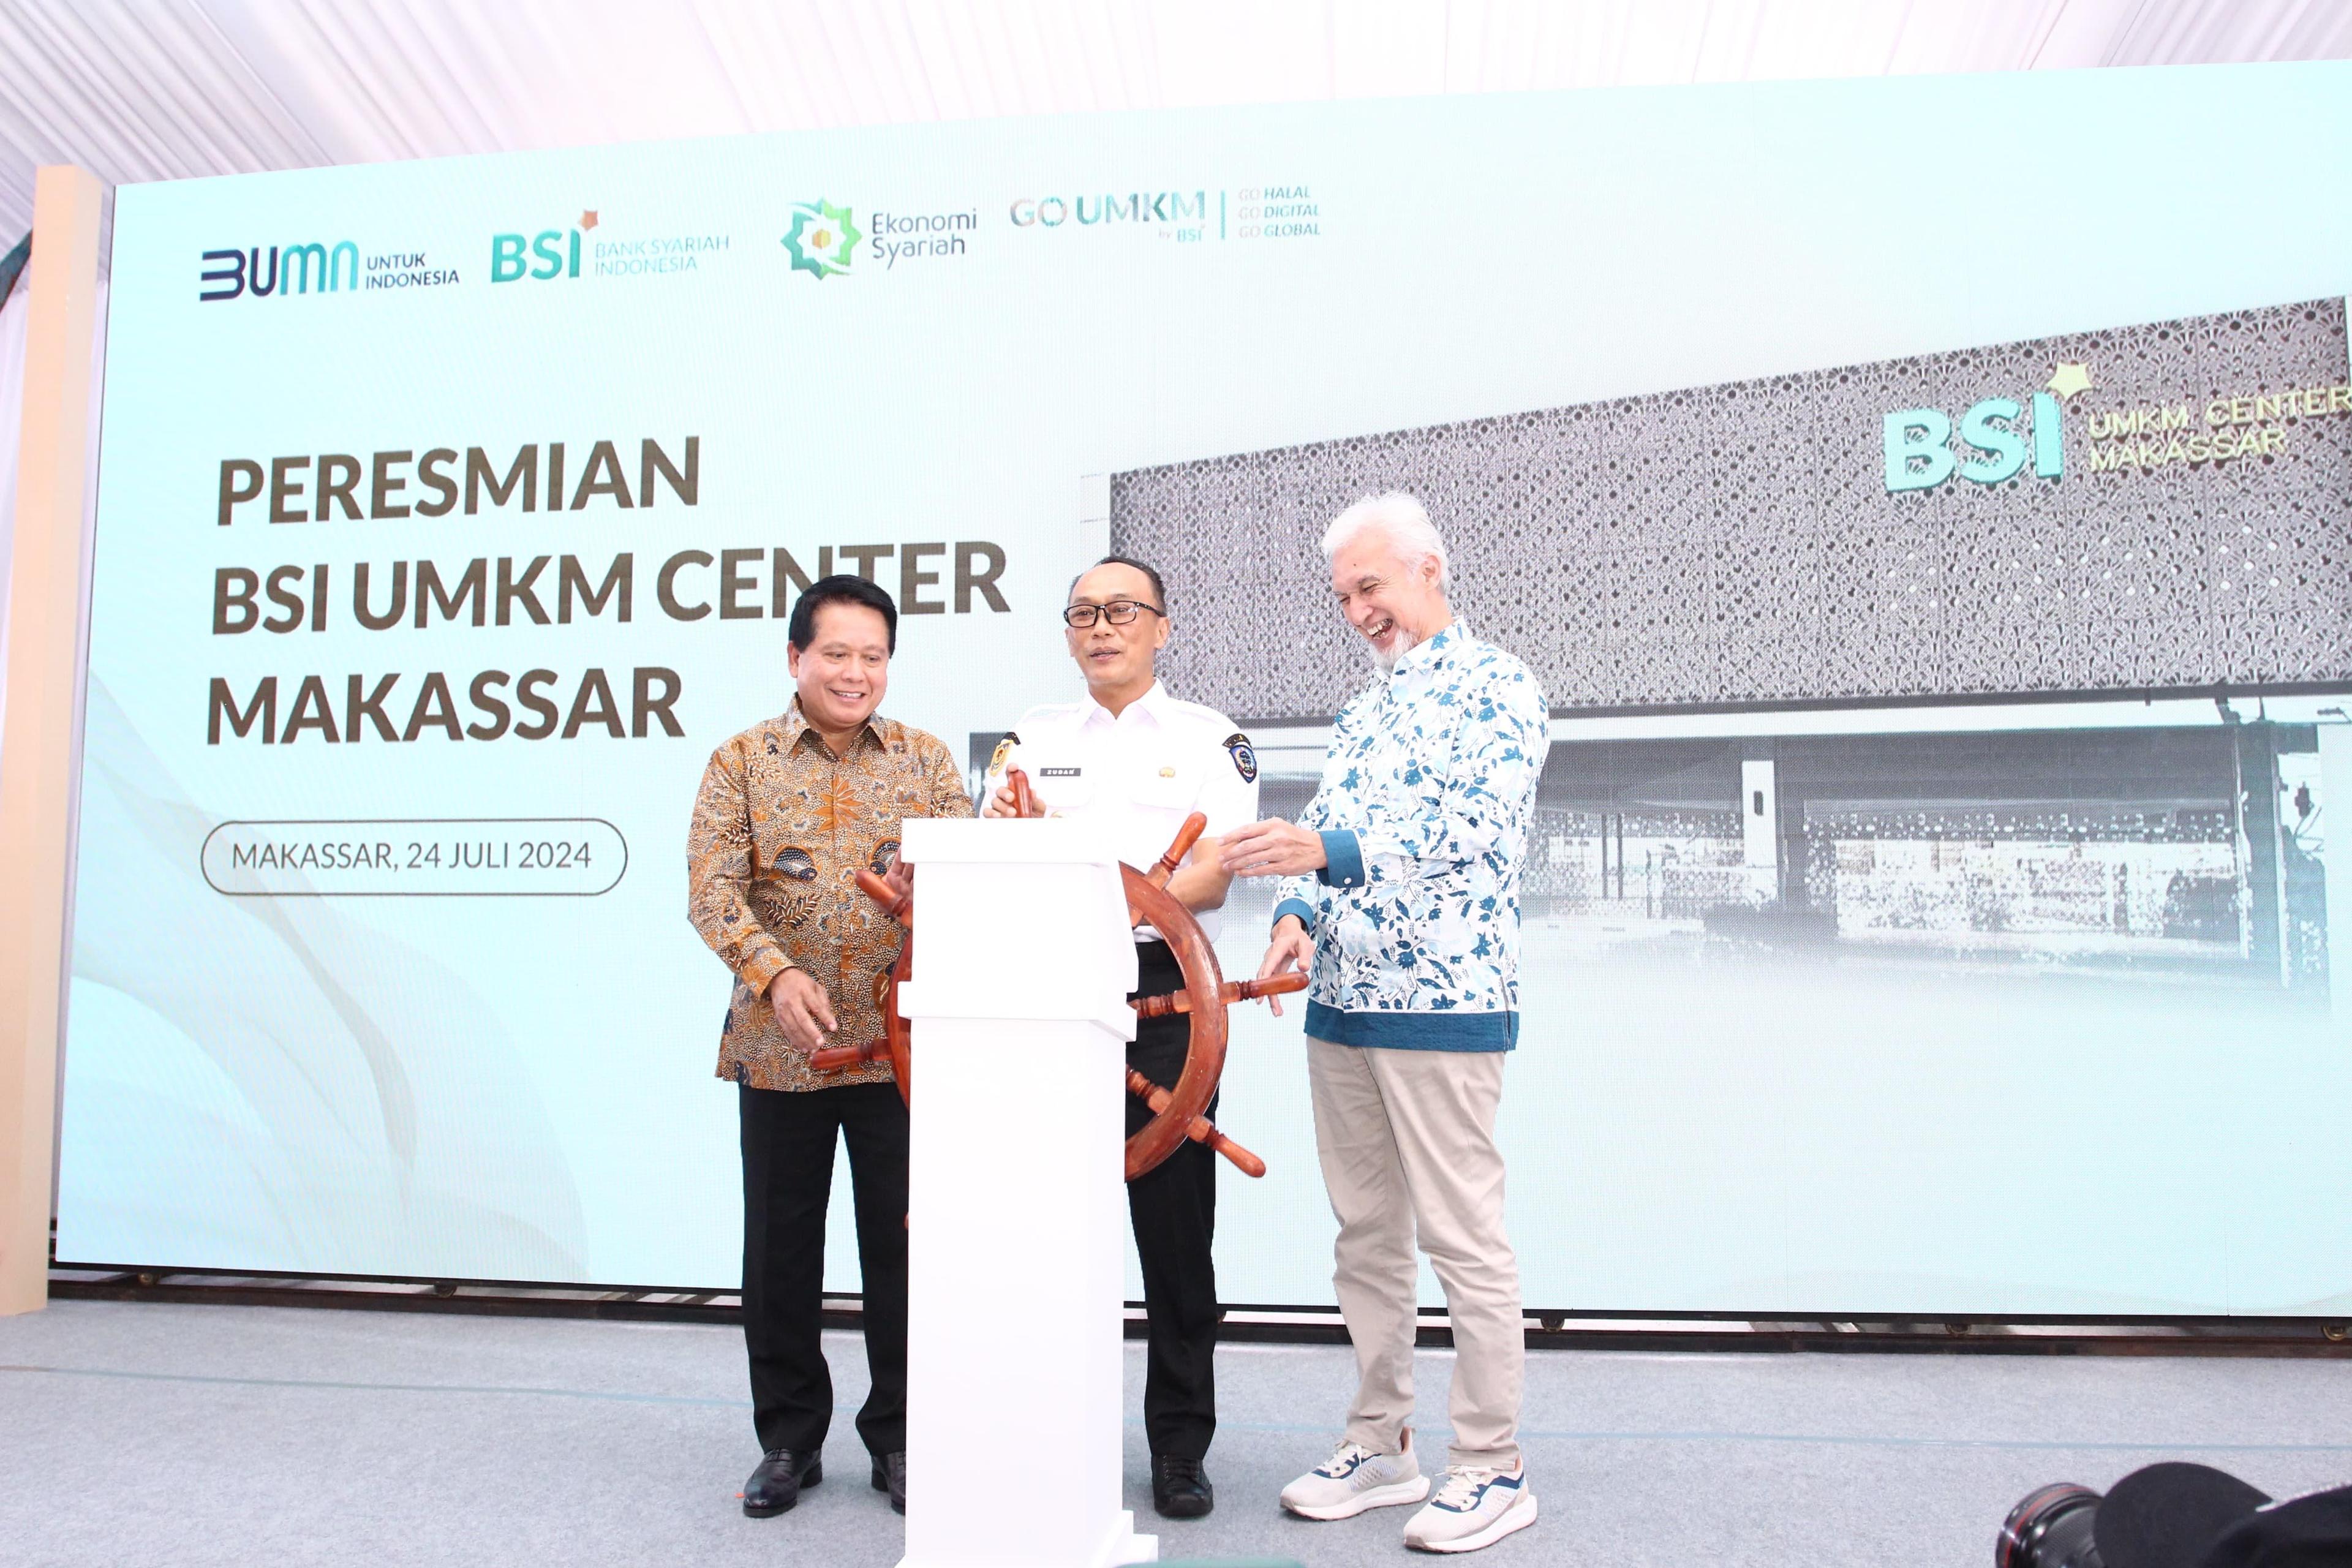 Buka UMKM Center Makassar, BSI Perkuat Pemberdayaan UMKM di Indonesia Timur